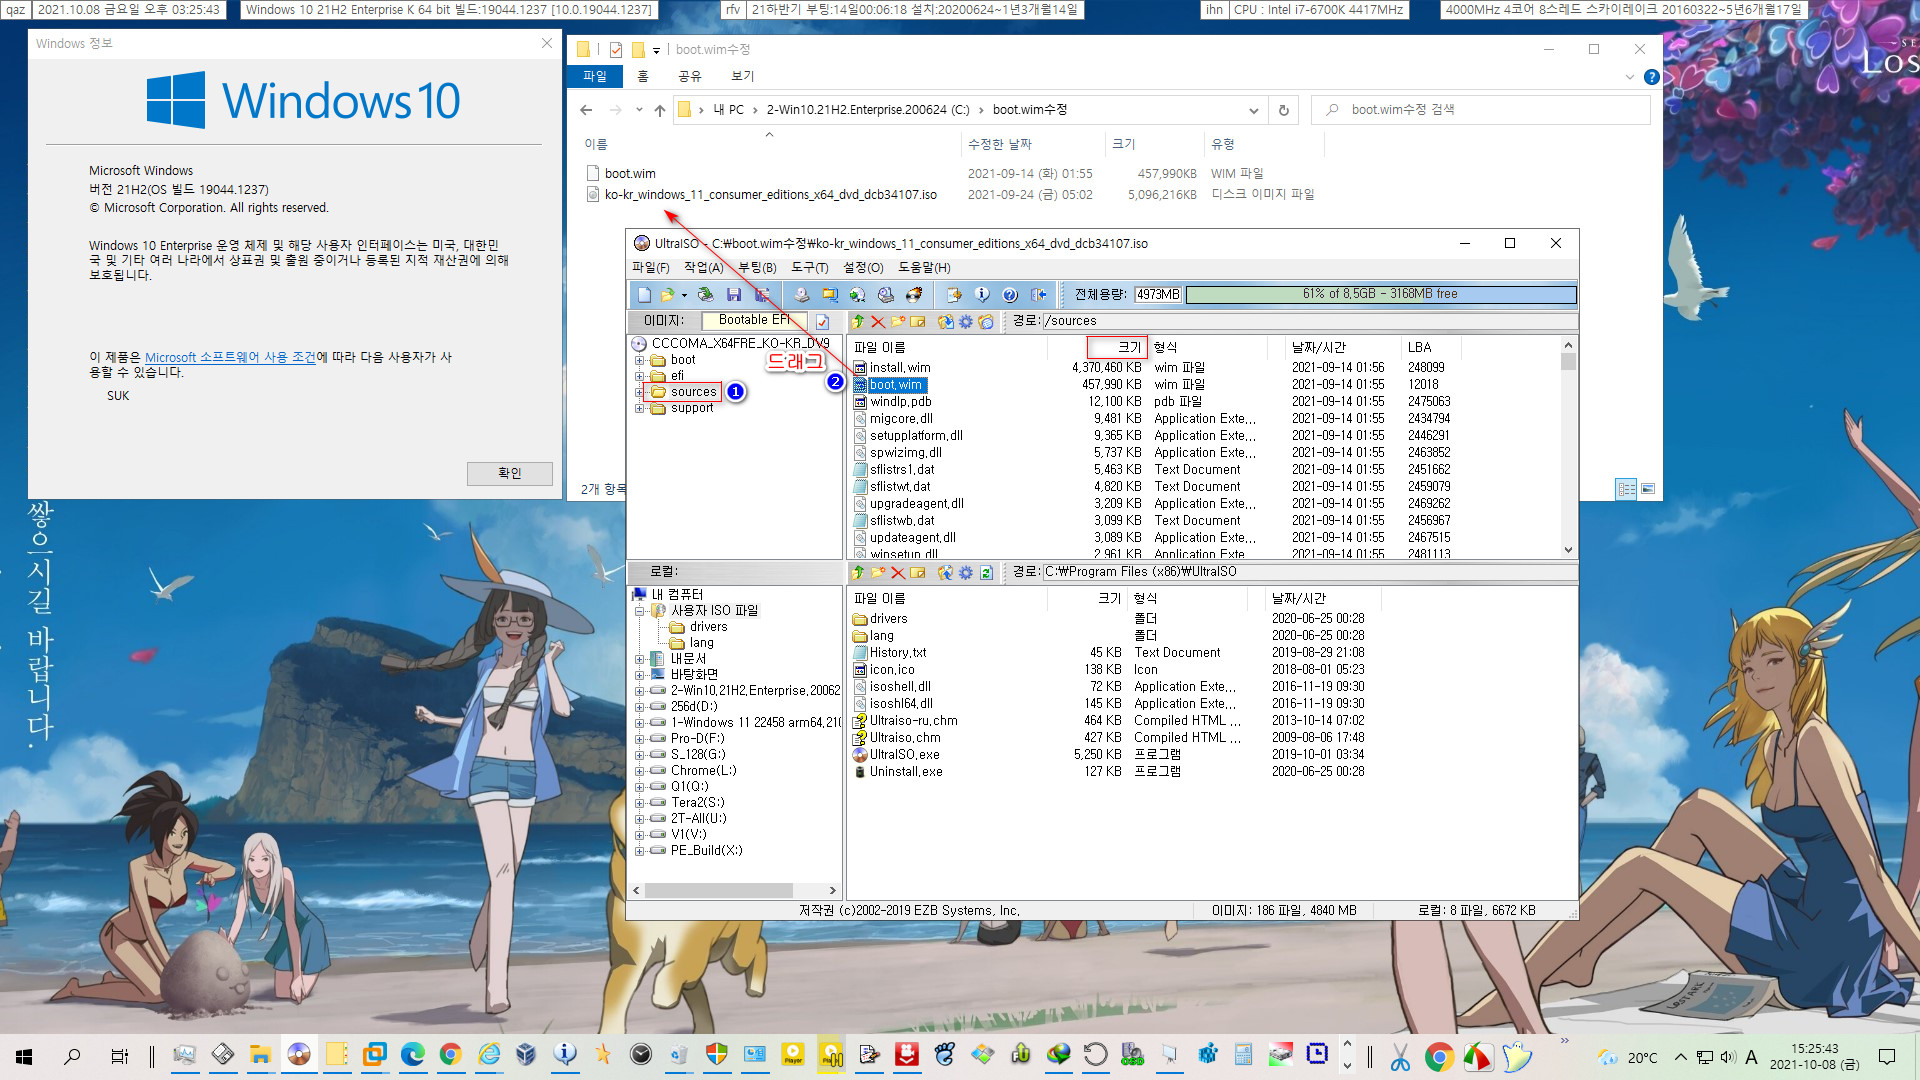 Windows 11 boot.wim 수정하기 (7-Zip 사용) - 하이브 로드하여 우회 패치 reg 병합 2021-10-08_152543.jpg